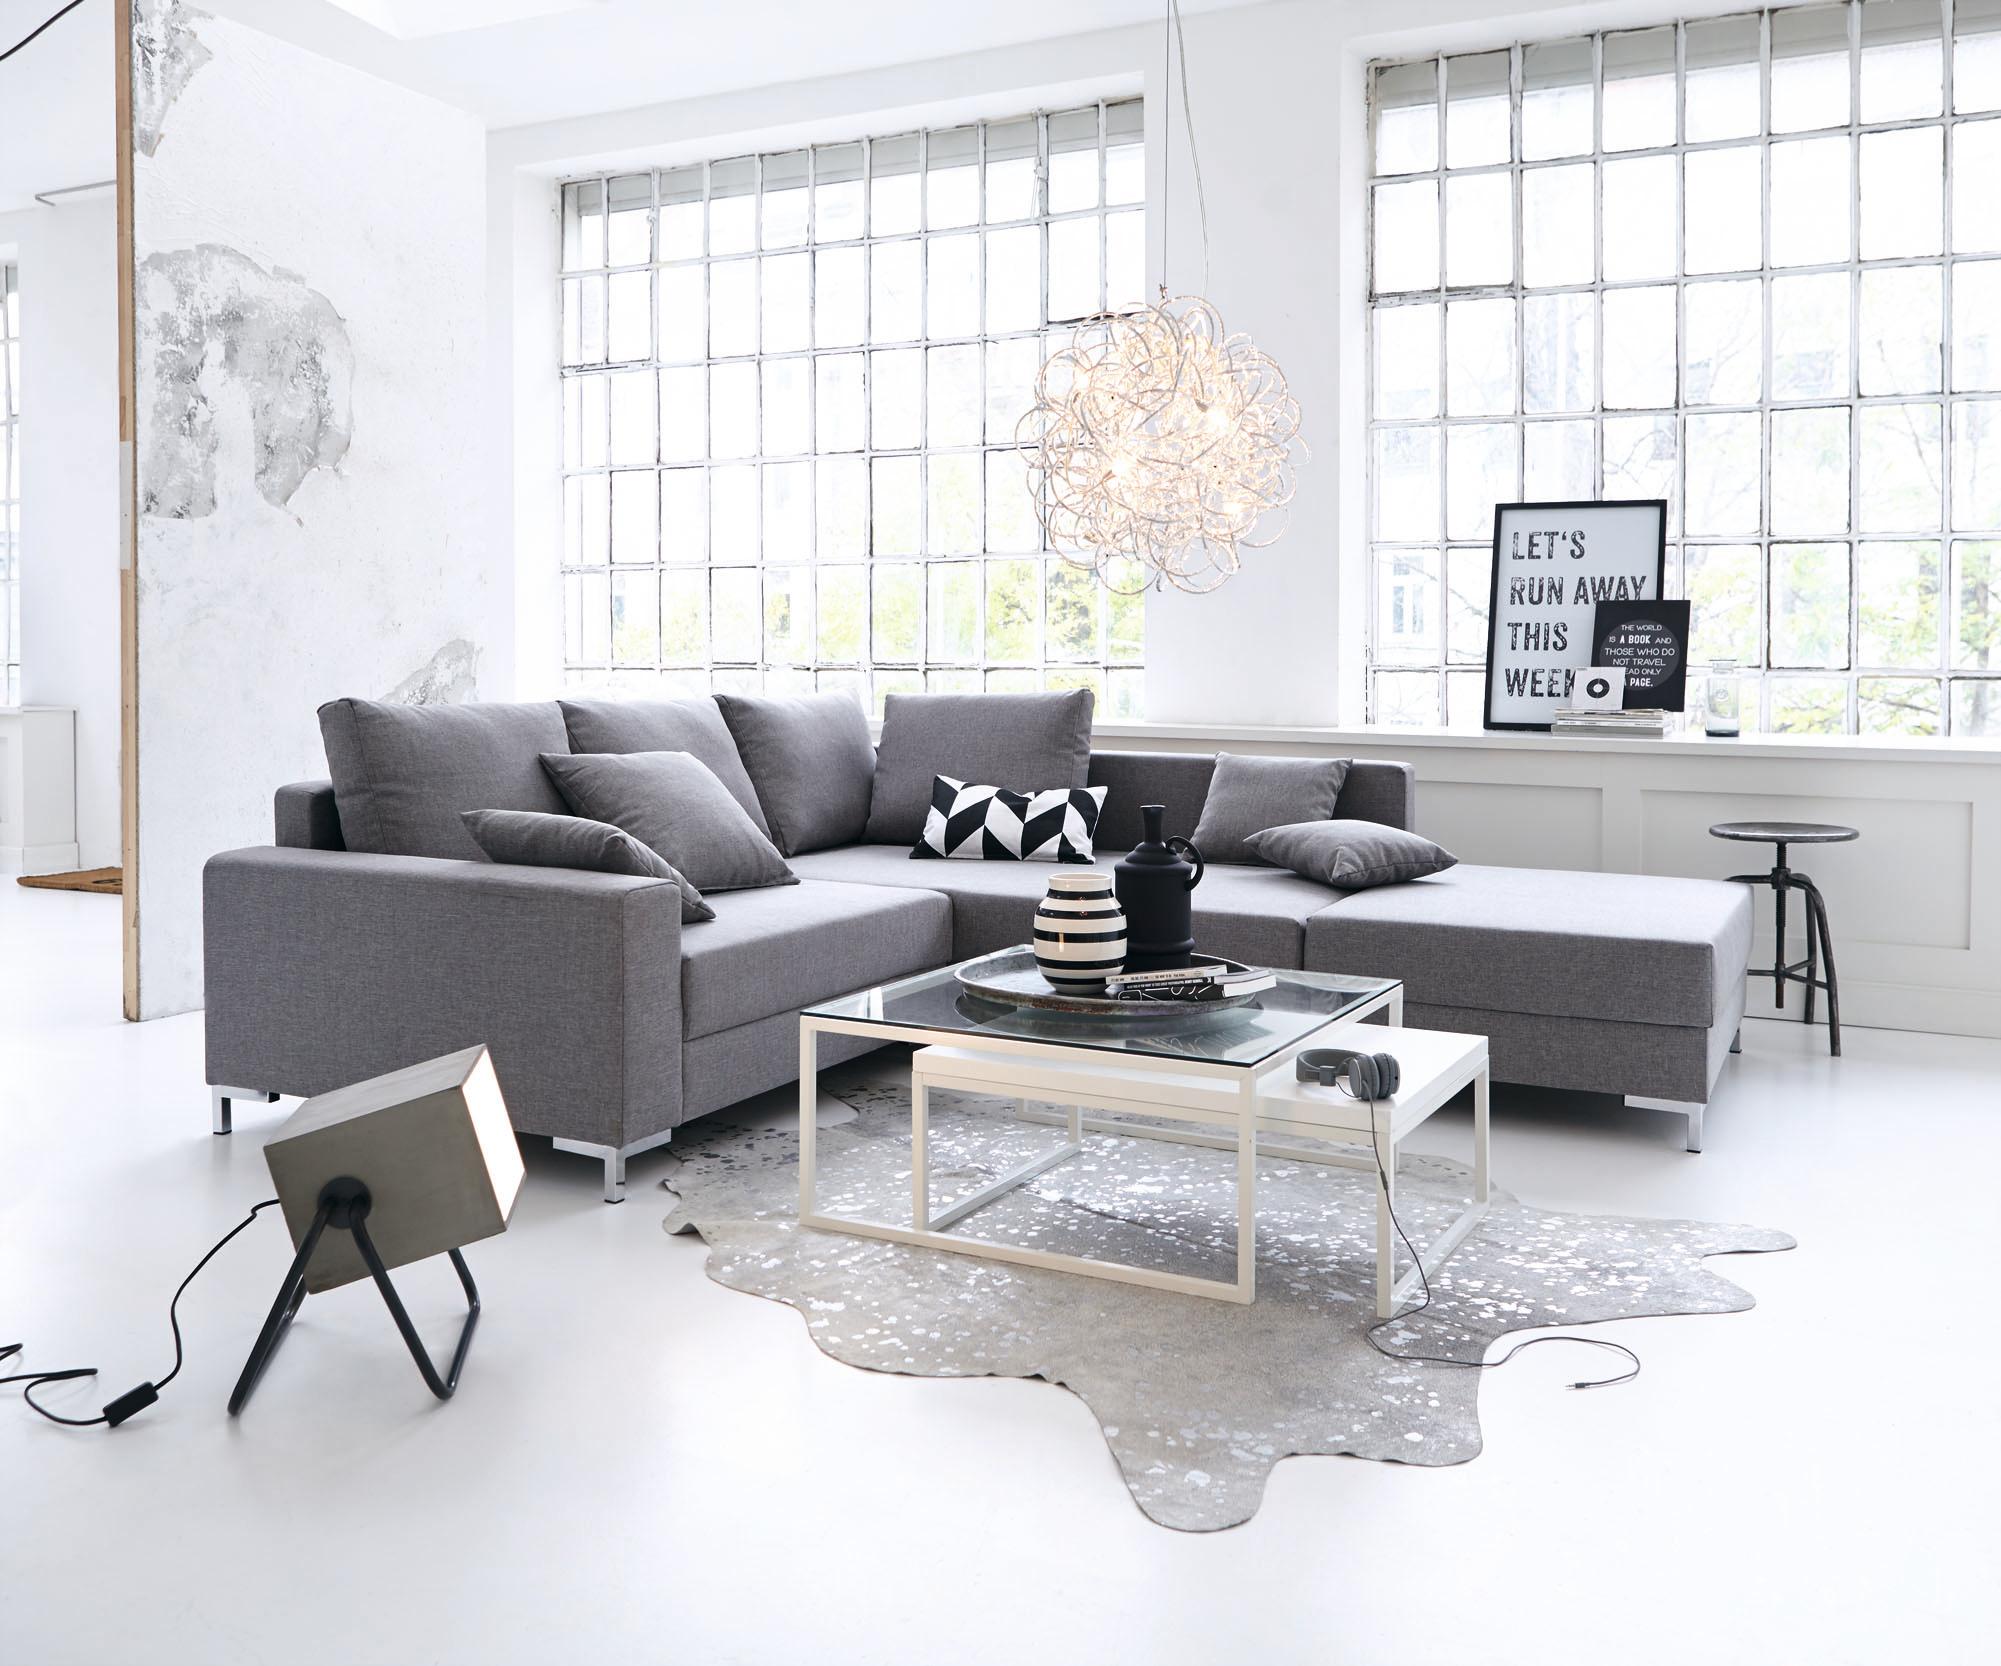 Wohnzimmer in Grau und Weiß #couchtisch #hocker #pendelleuchte #sofa #grauessofa #glascouchtisch #zimmergestaltung ©Impressionen